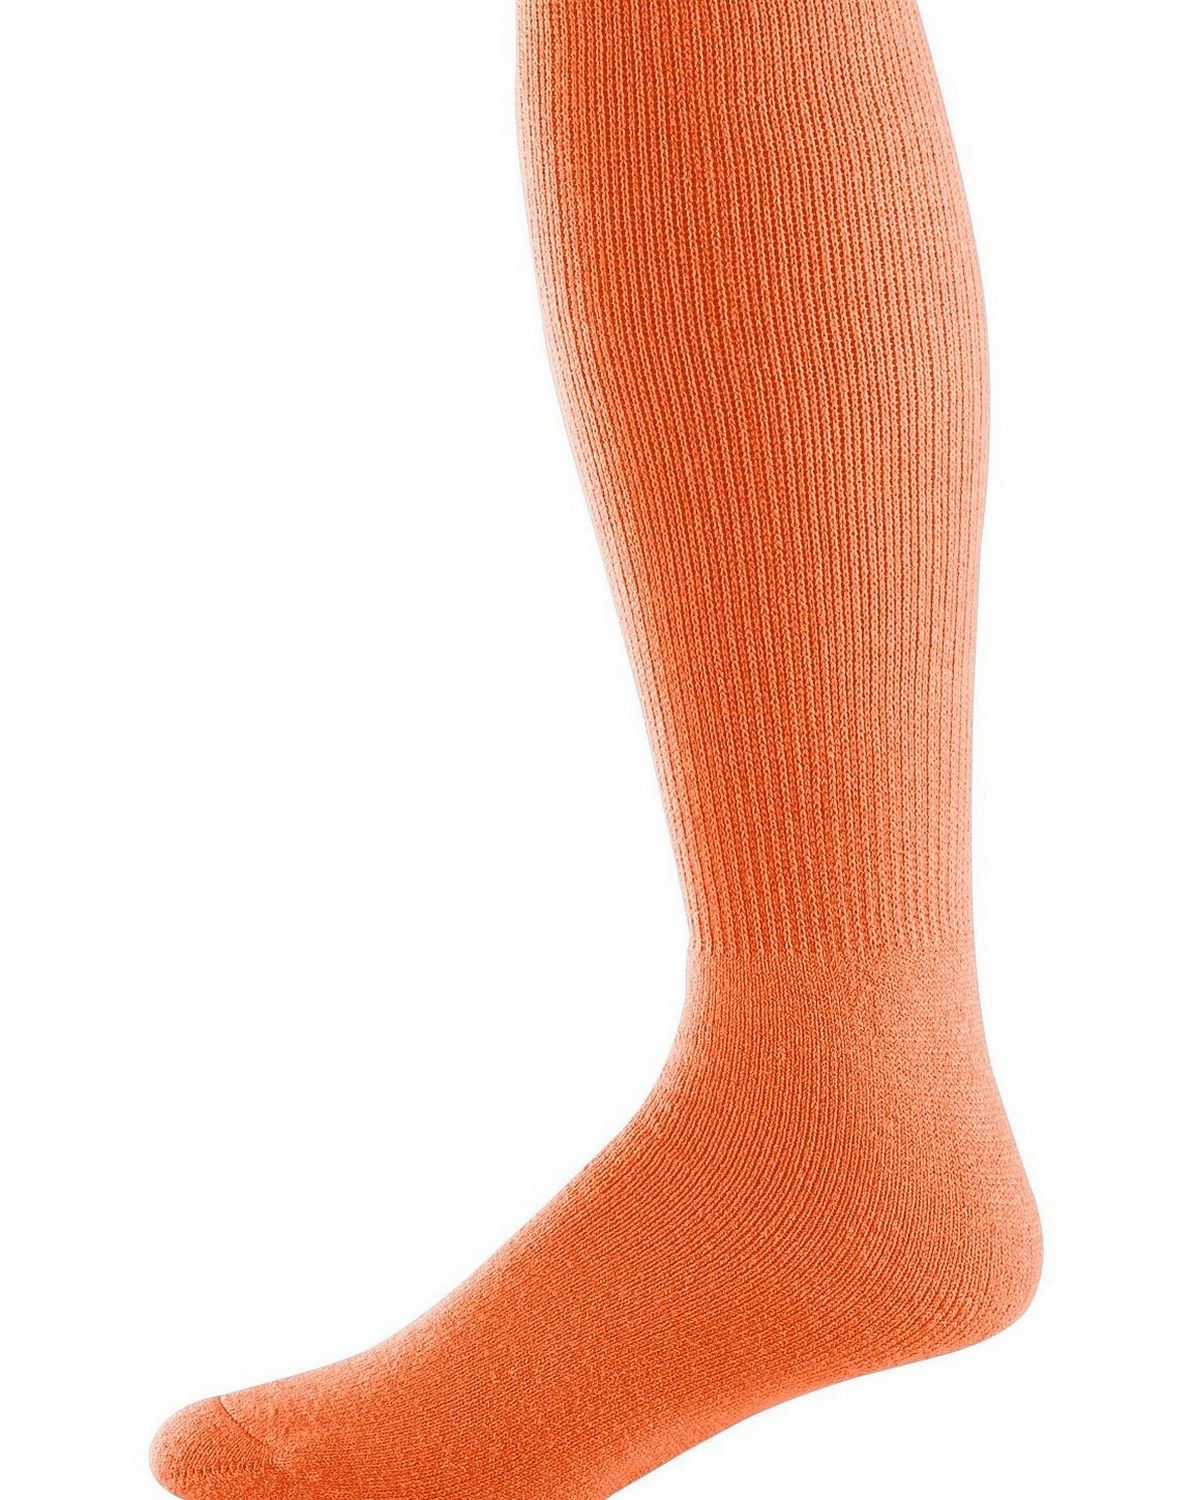 Augusta Sportswear 6026 Intermediate Athletic Socks